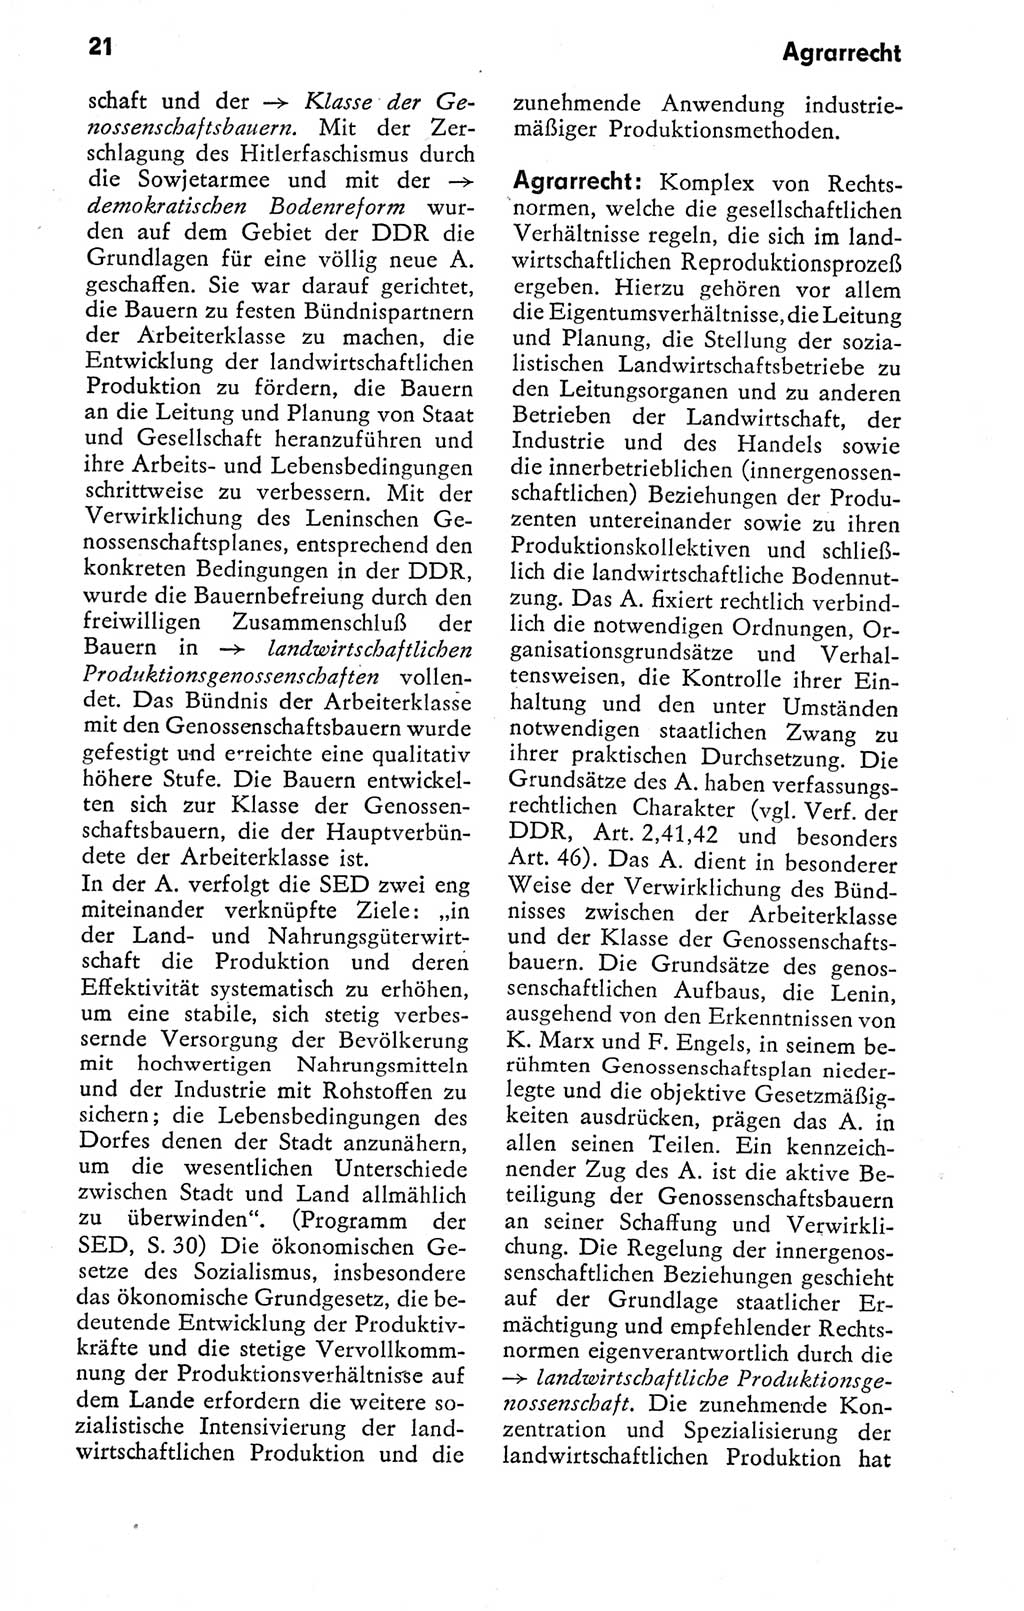 Kleines politisches Wörterbuch [Deutsche Demokratische Republik (DDR)] 1978, Seite 21 (Kl. pol. Wb. DDR 1978, S. 21)